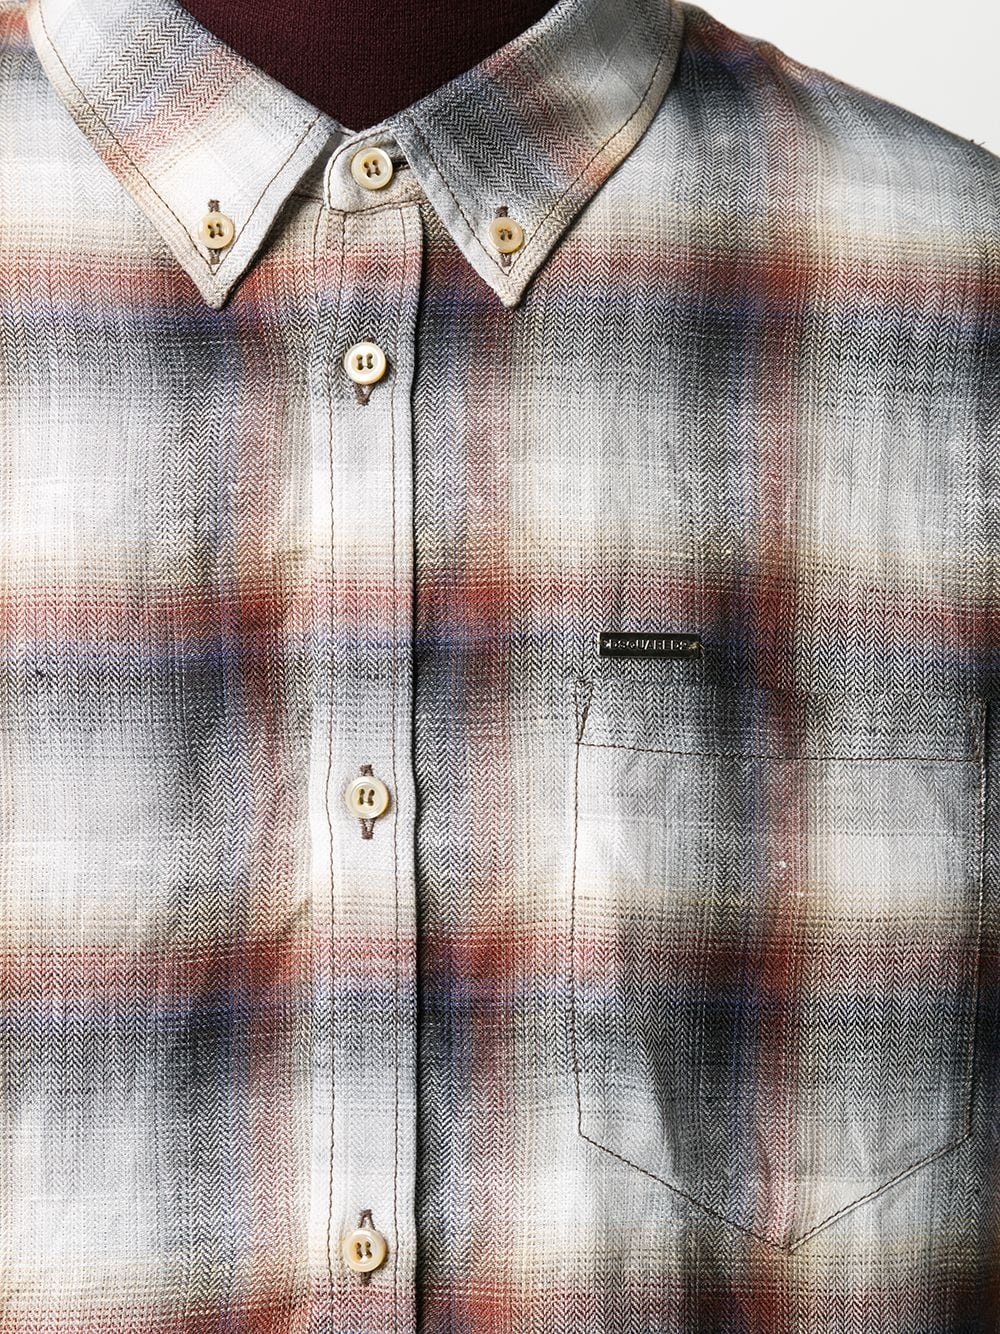 plaid button-front shirt - 5